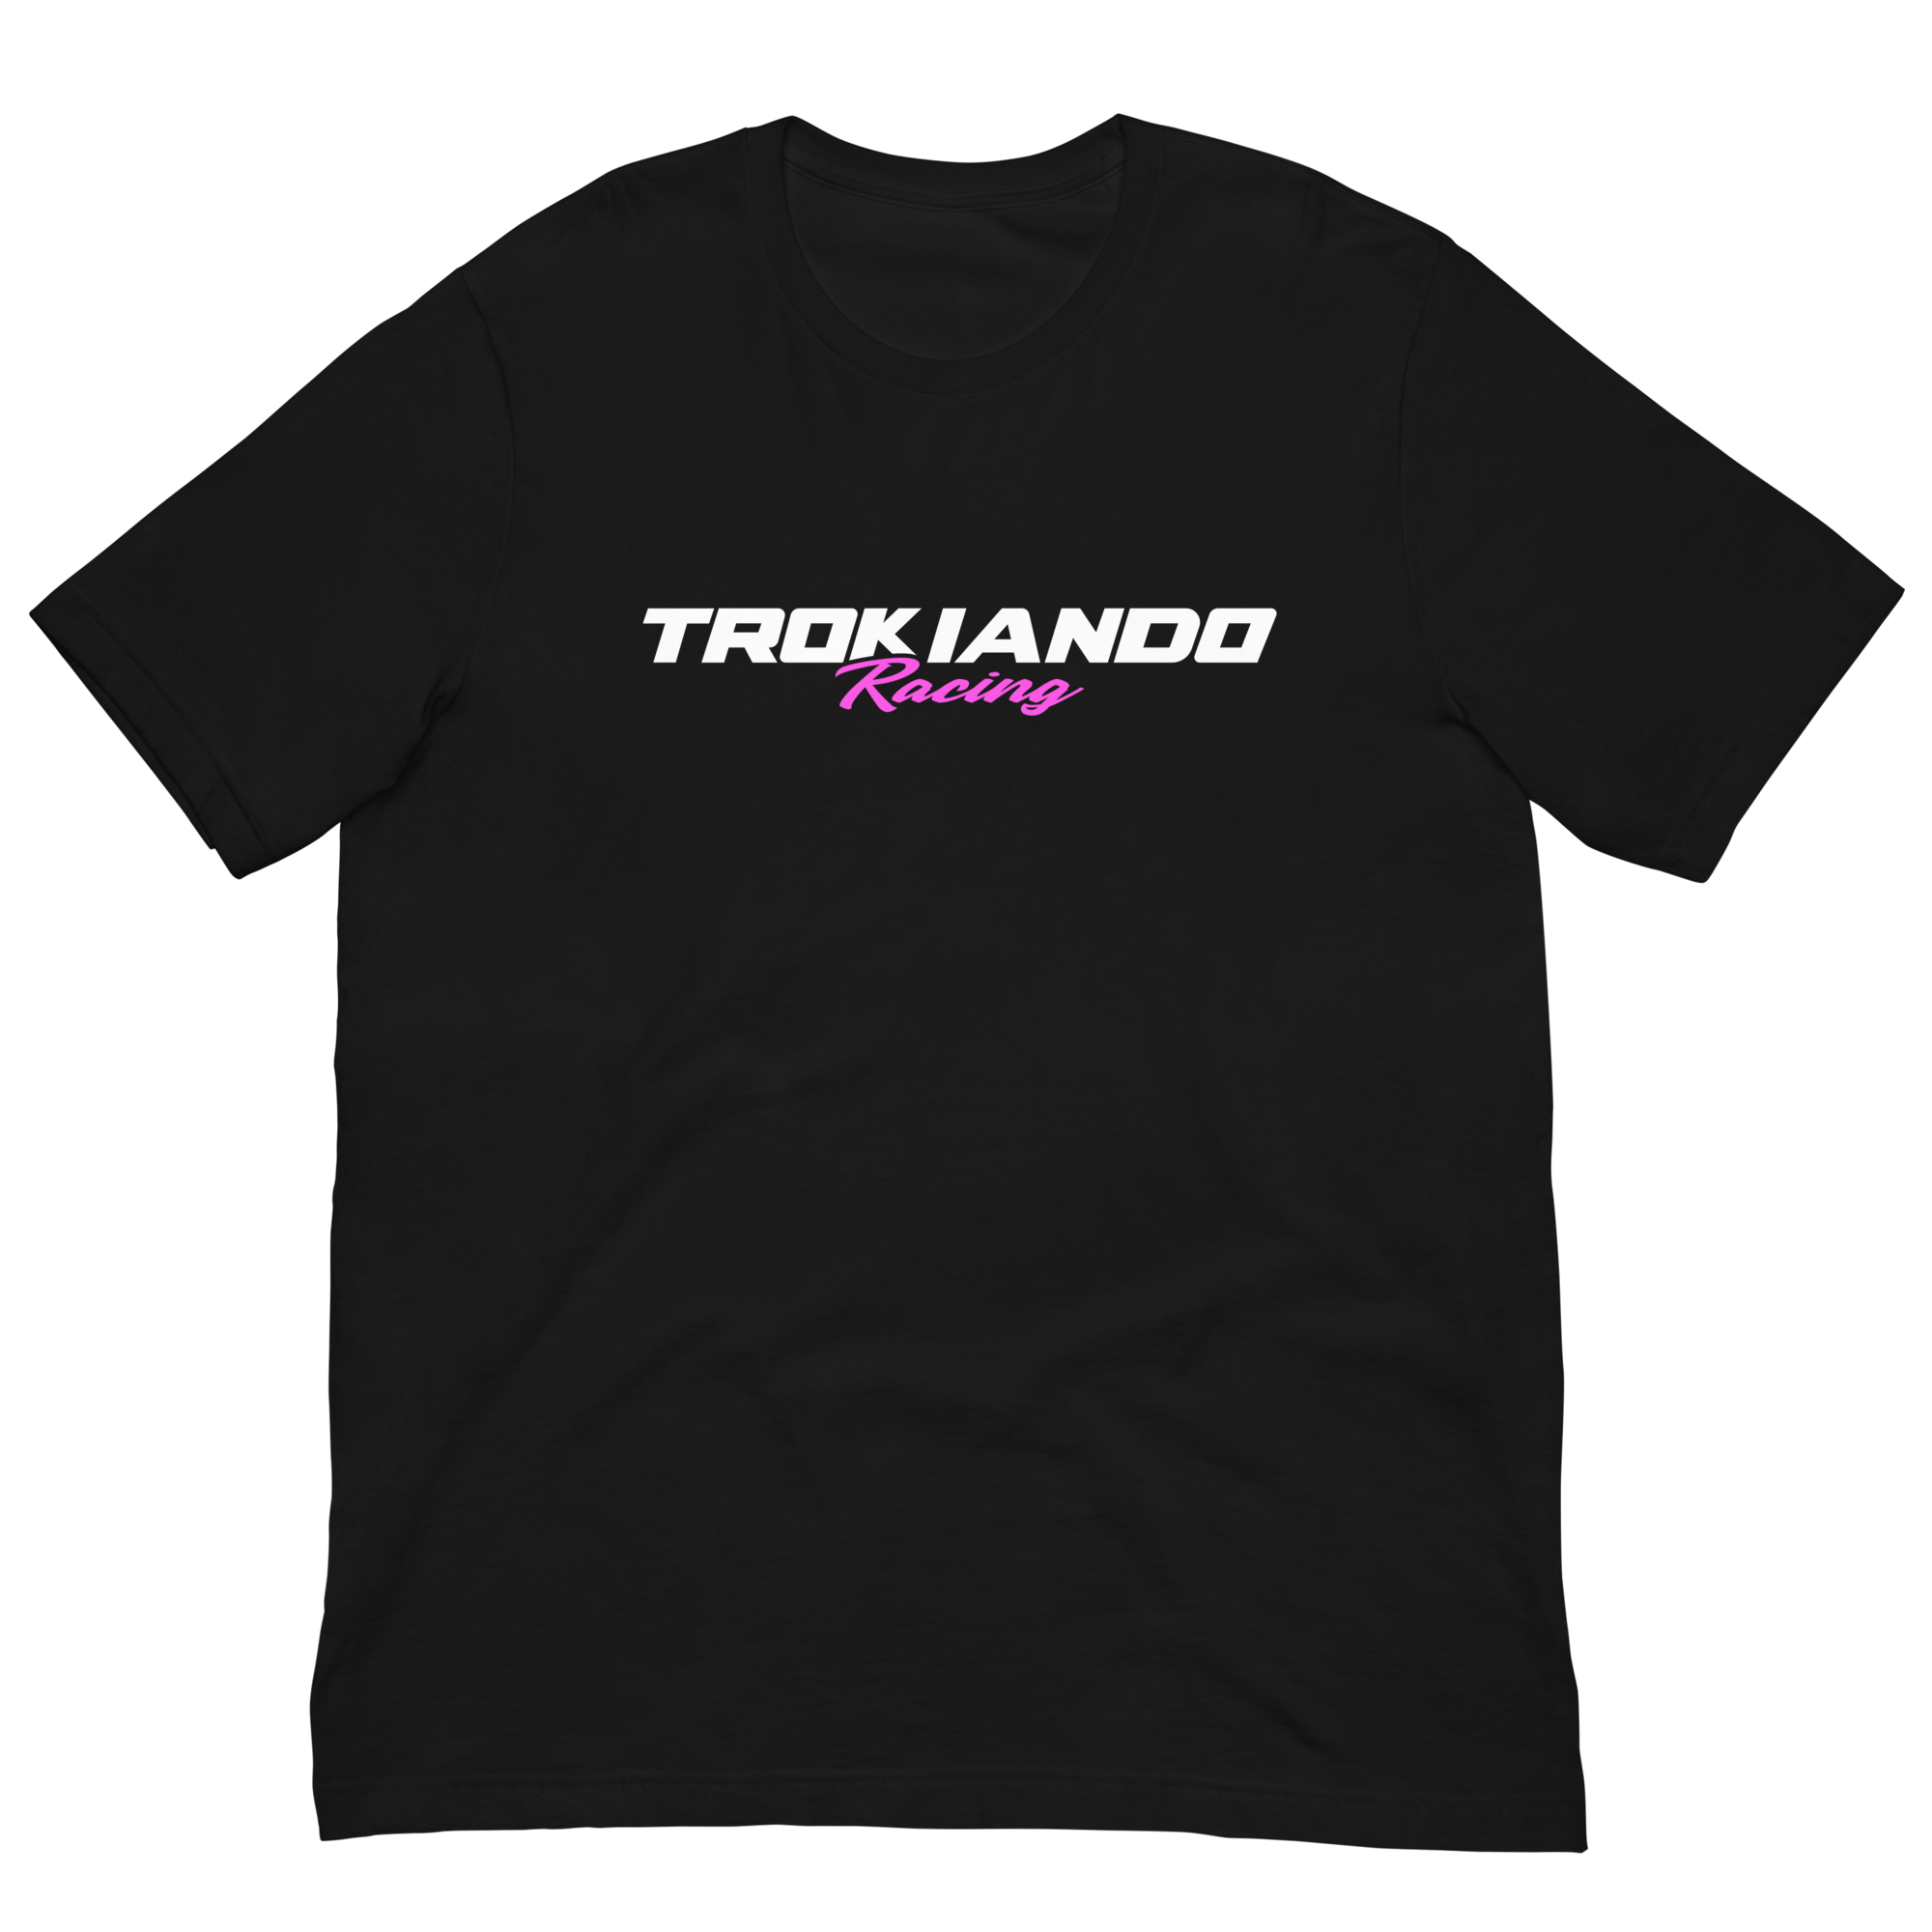 Pink Trokiando Racing Shirt